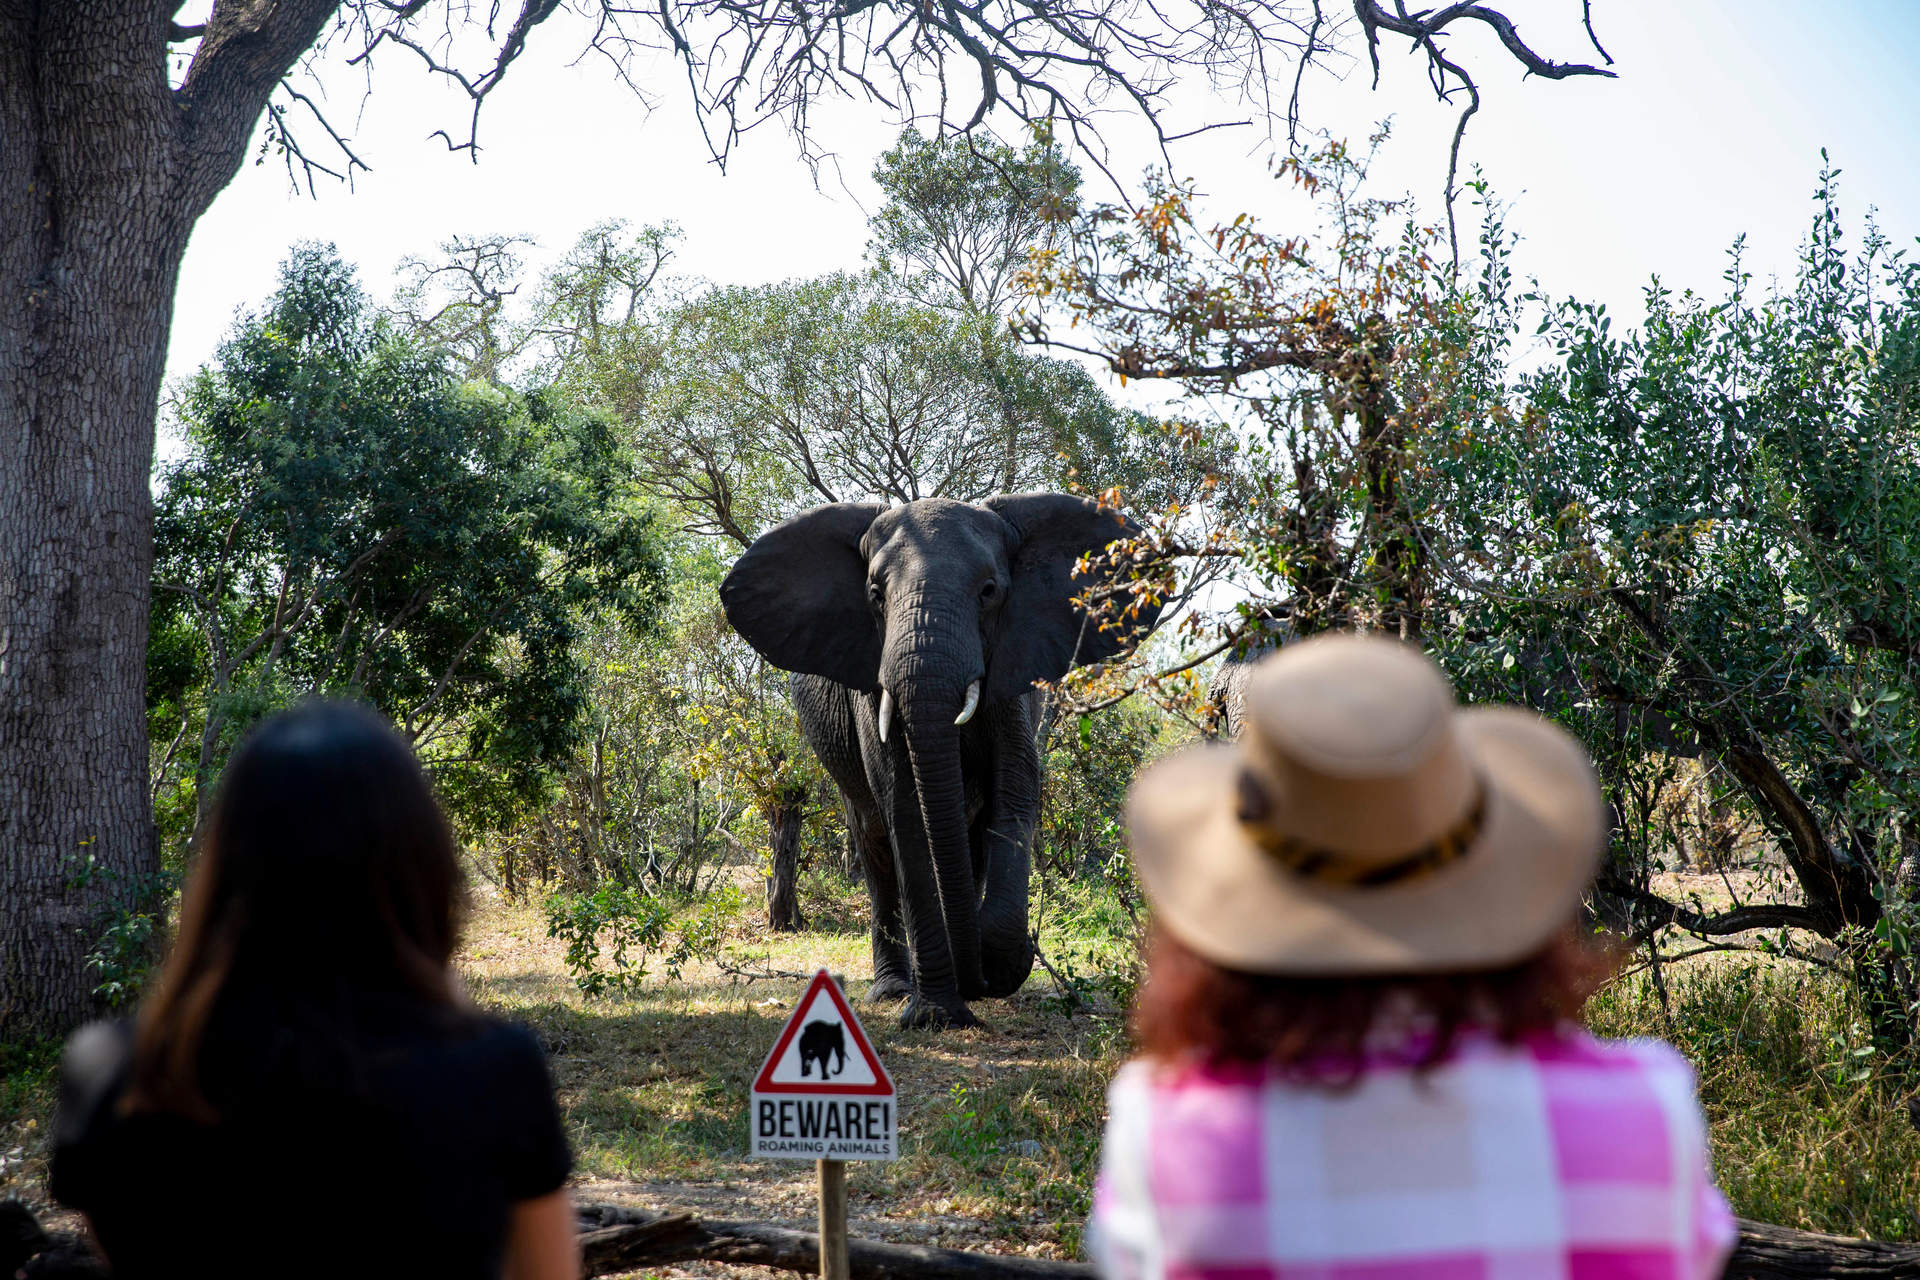 Muere un turista español en Sudáfrica aplastado por un elefante al intentar fotografiar su manada